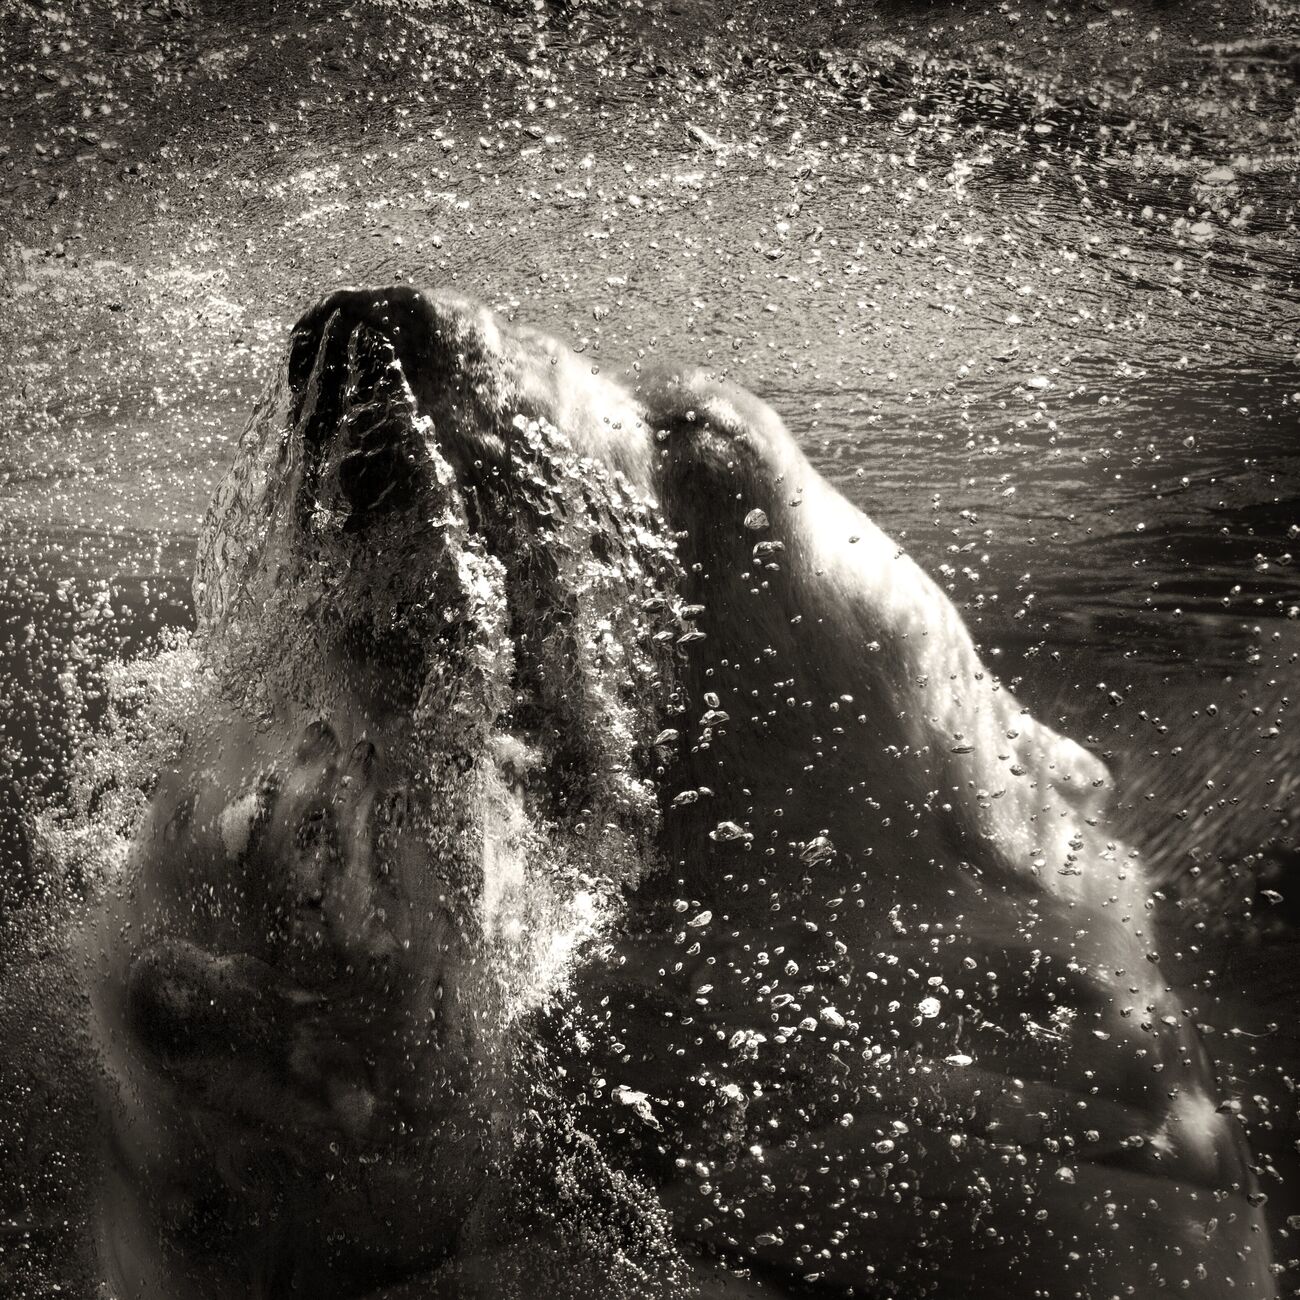 Underwater Polar Bear, Palmyre Zoo, France. September 2009. Ref-1226 - Denis Olivier Photography